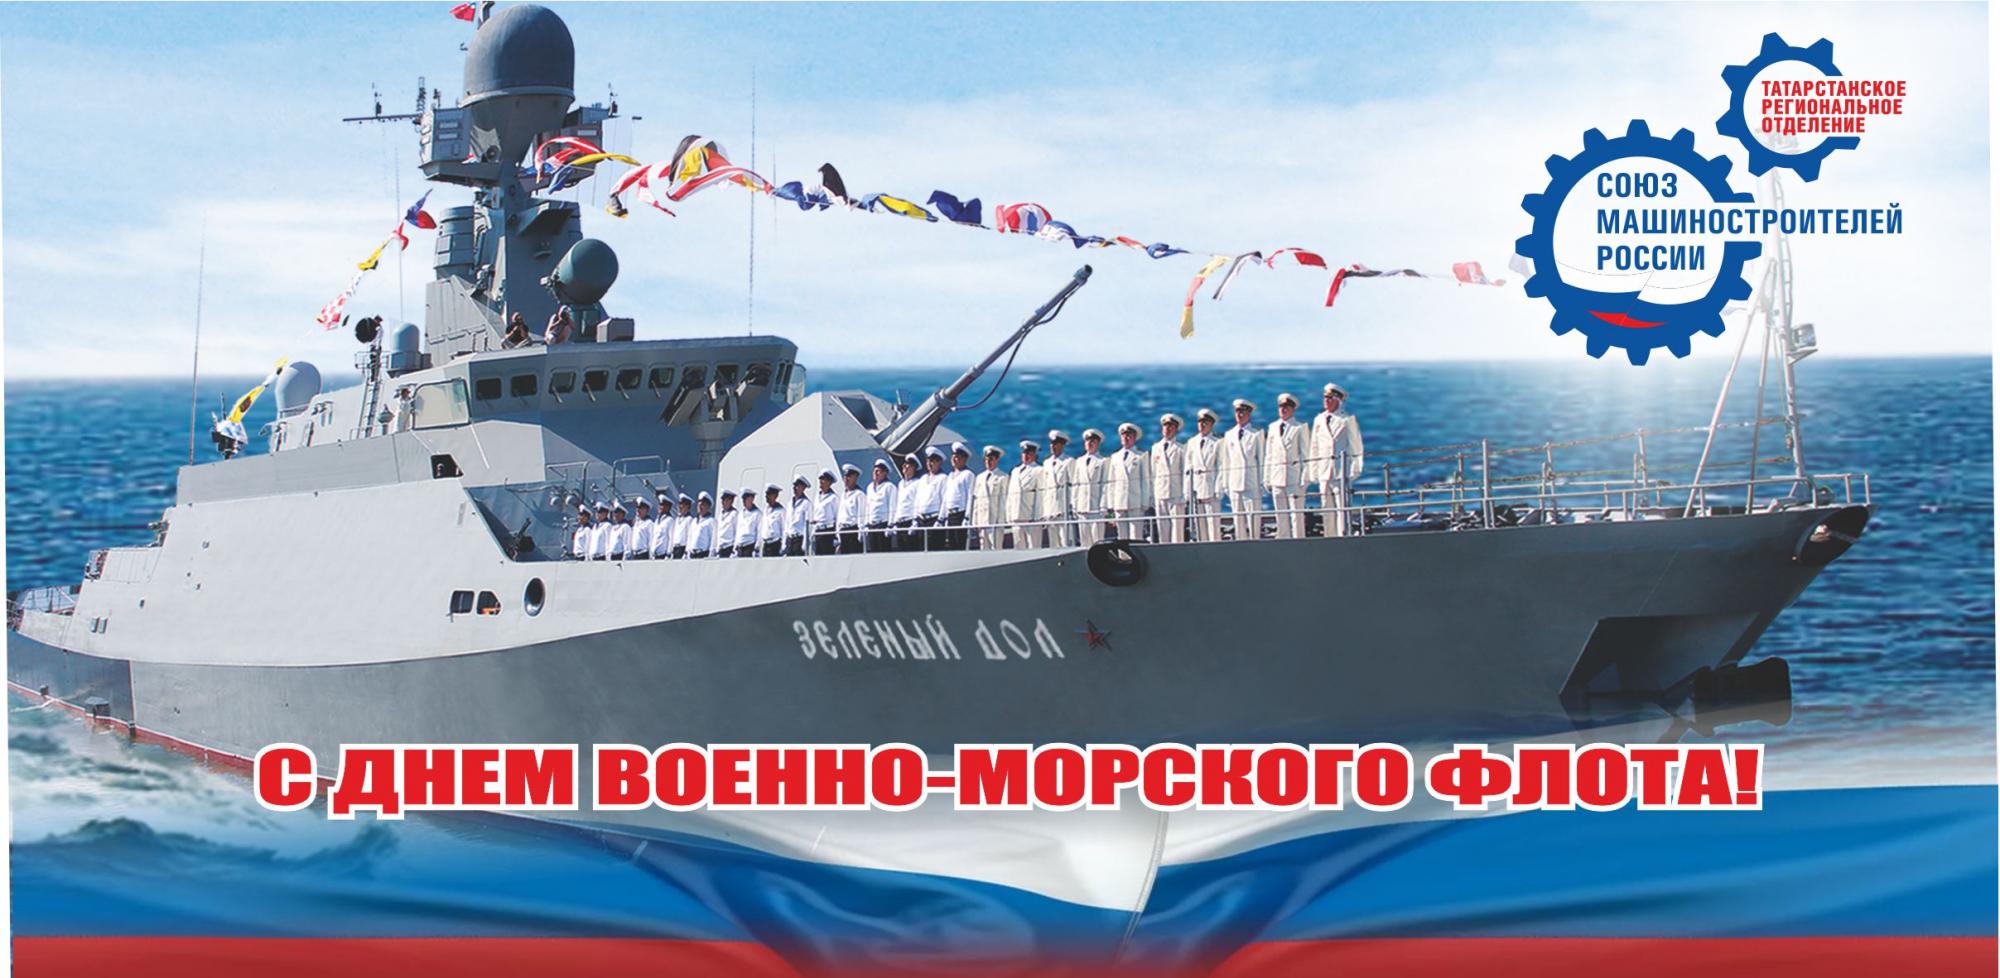 Радик Хасанов поздравил с днем ВМФ татарстанских корабелов